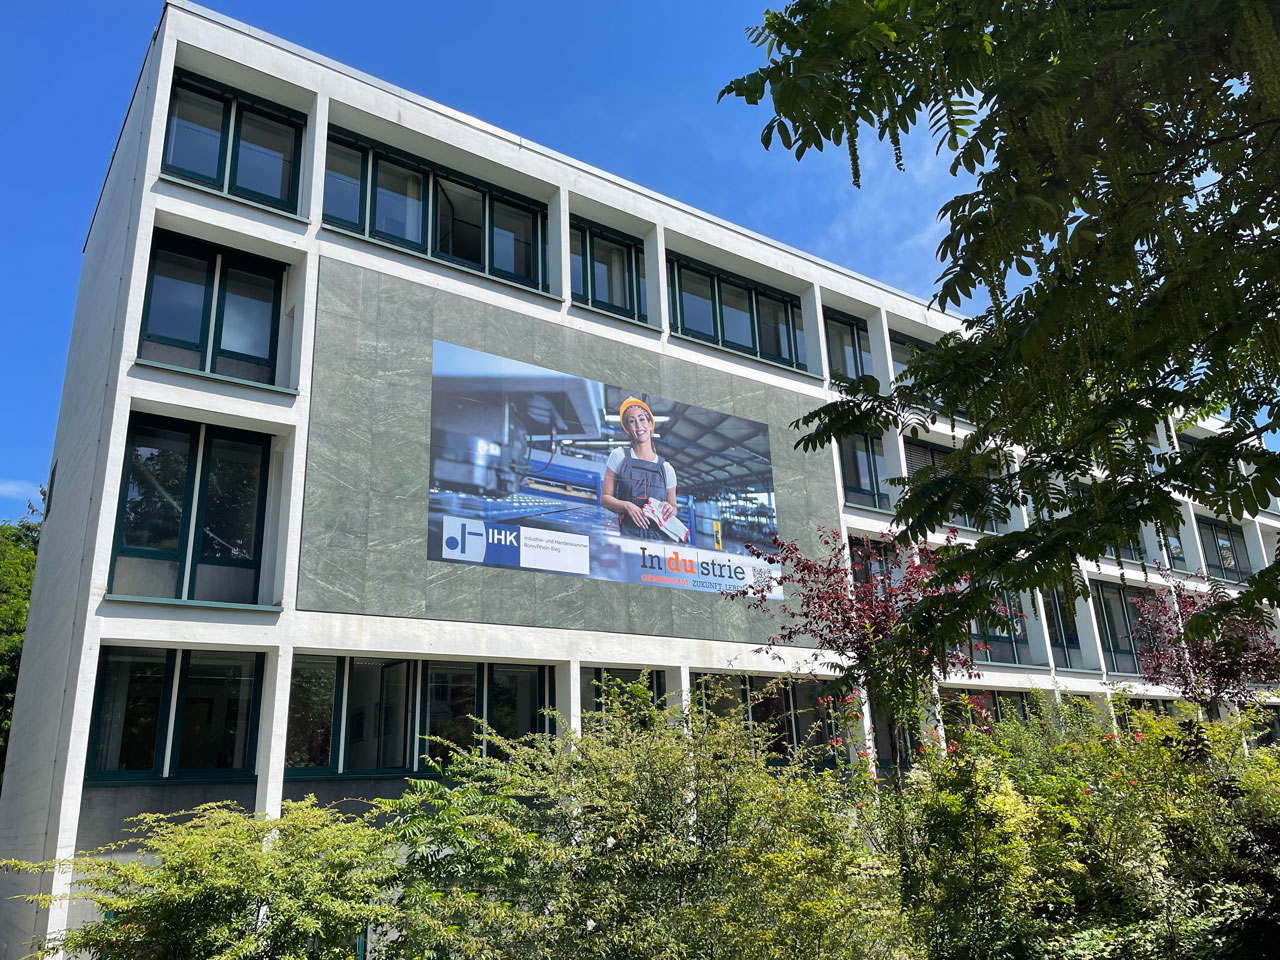 © IHK Bonn RheinSieg - Ansicht des IHK Gebäudes in Bonn